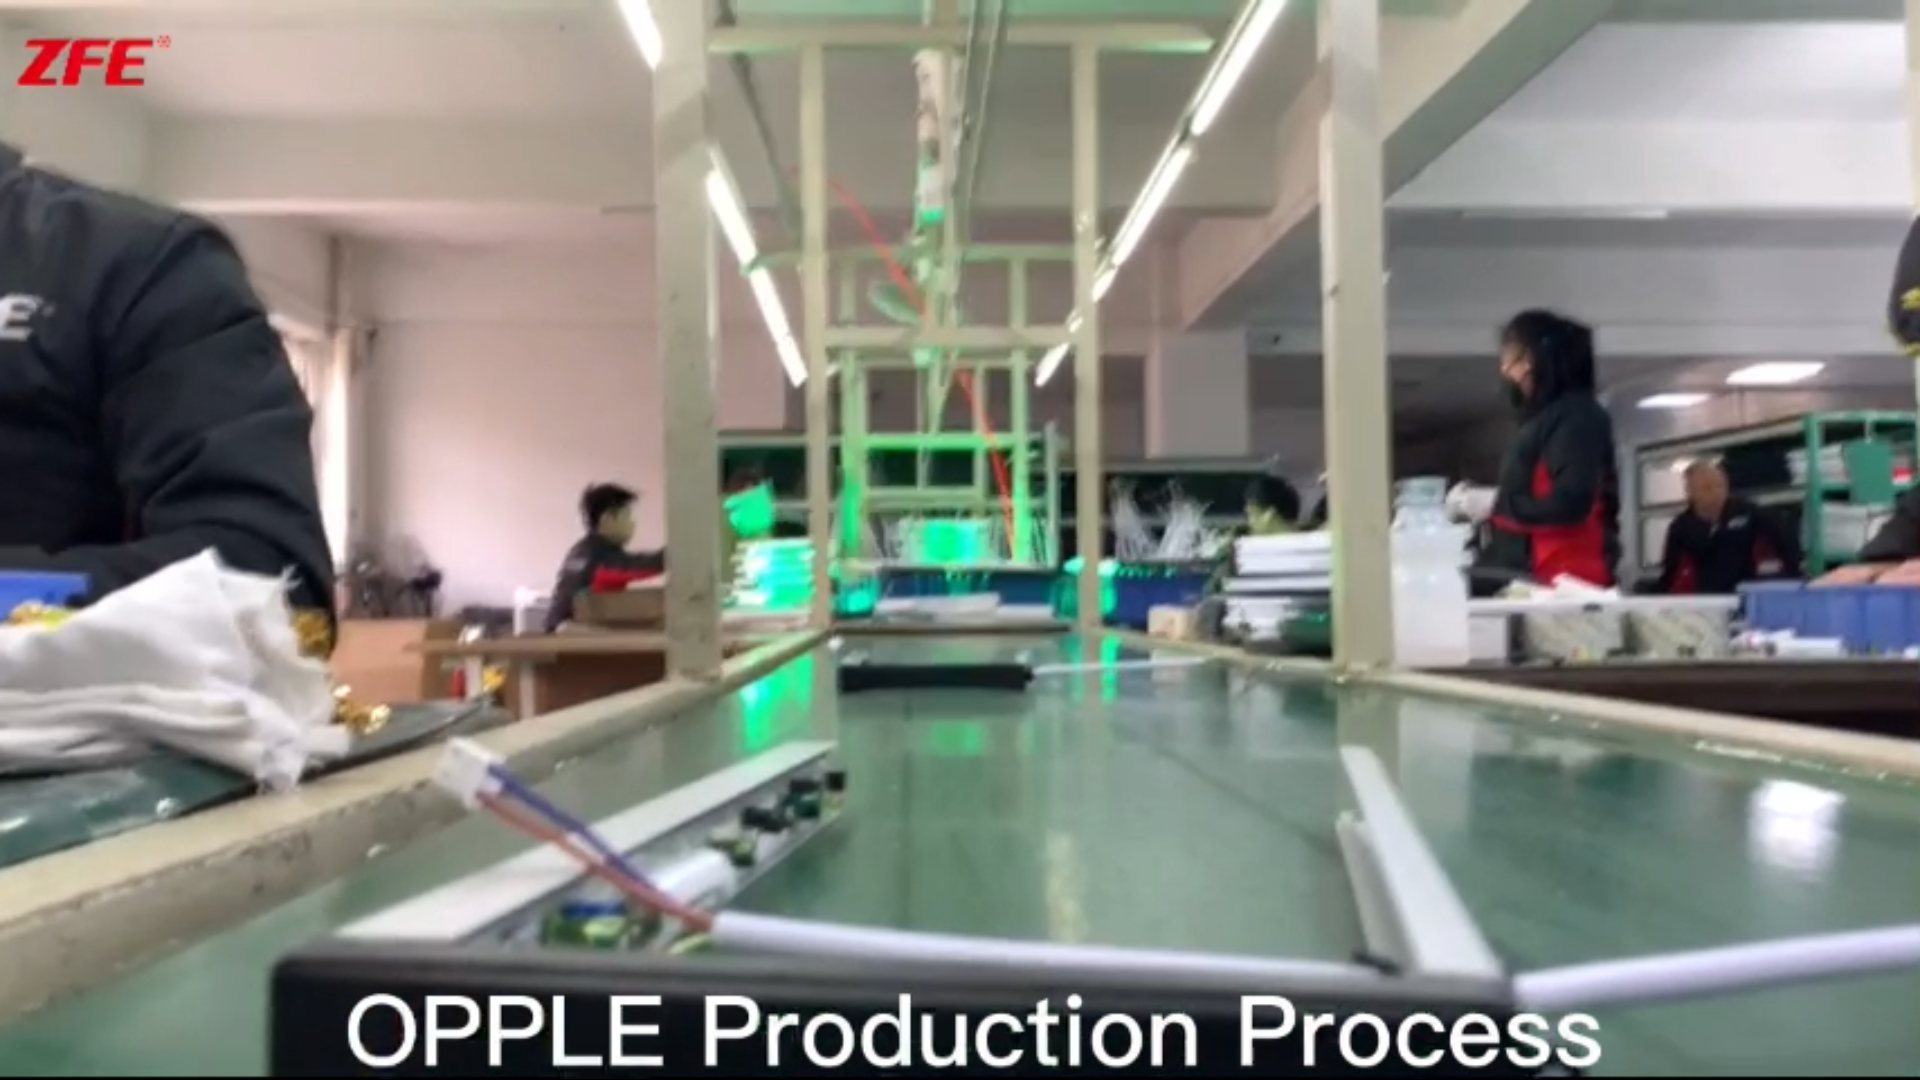 OEM производствена линия за марков продукт OPPLE, произведен от Guangdong Zhenhui Fire Technology